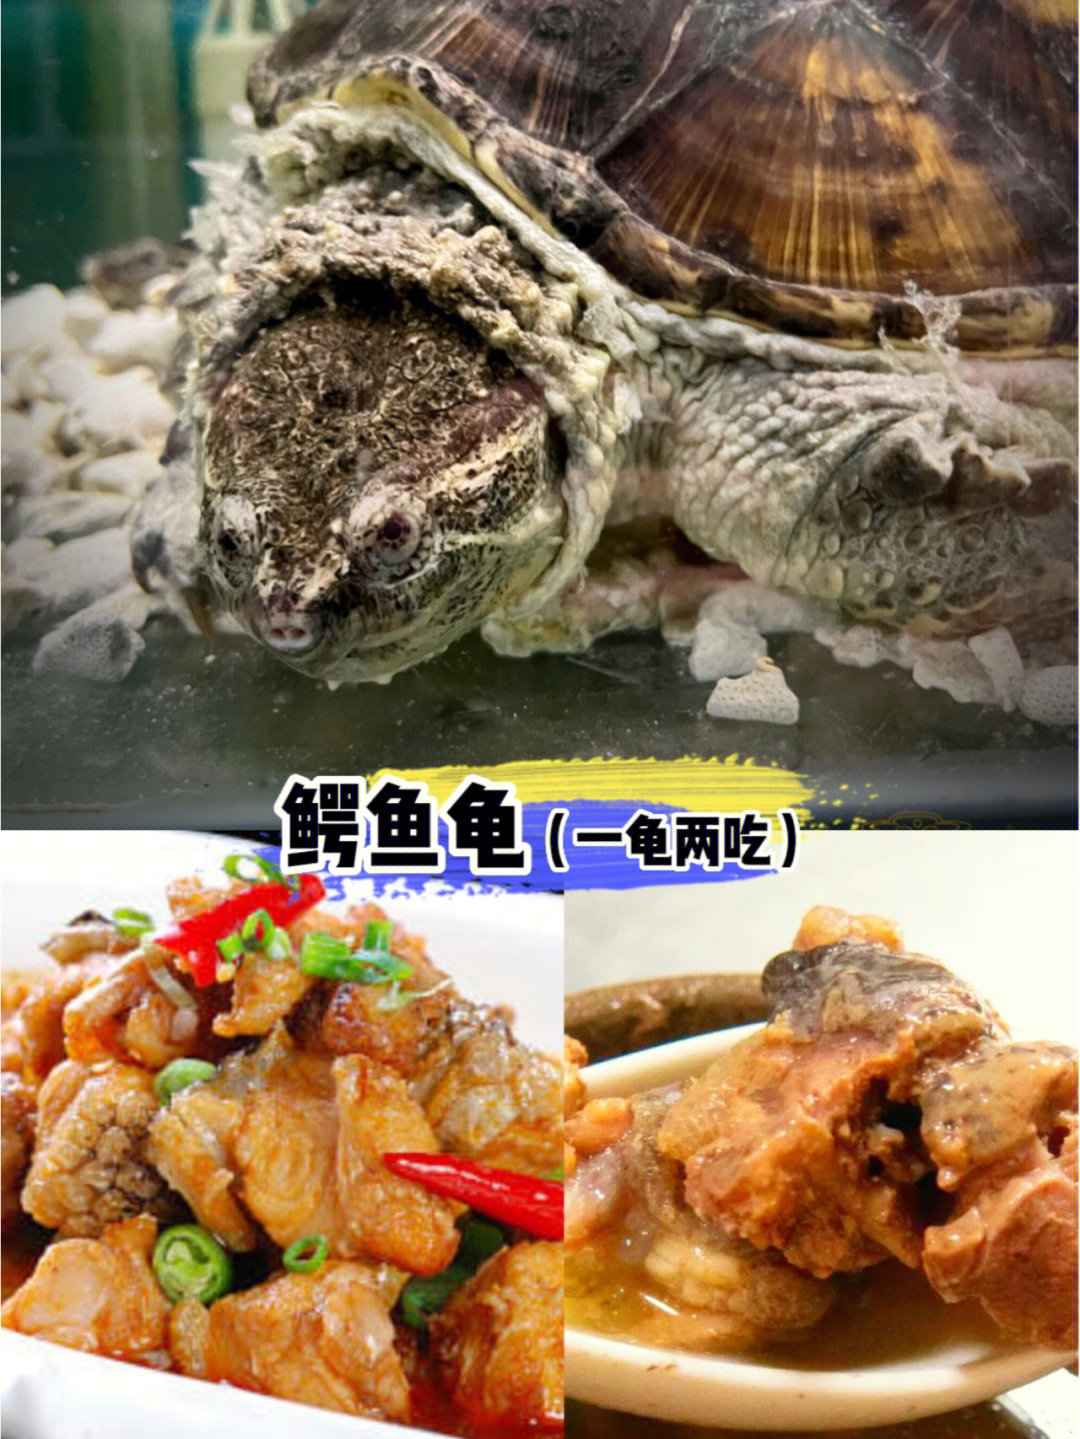 新奇菜品丨凶猛的肉食动物鳄鱼龟